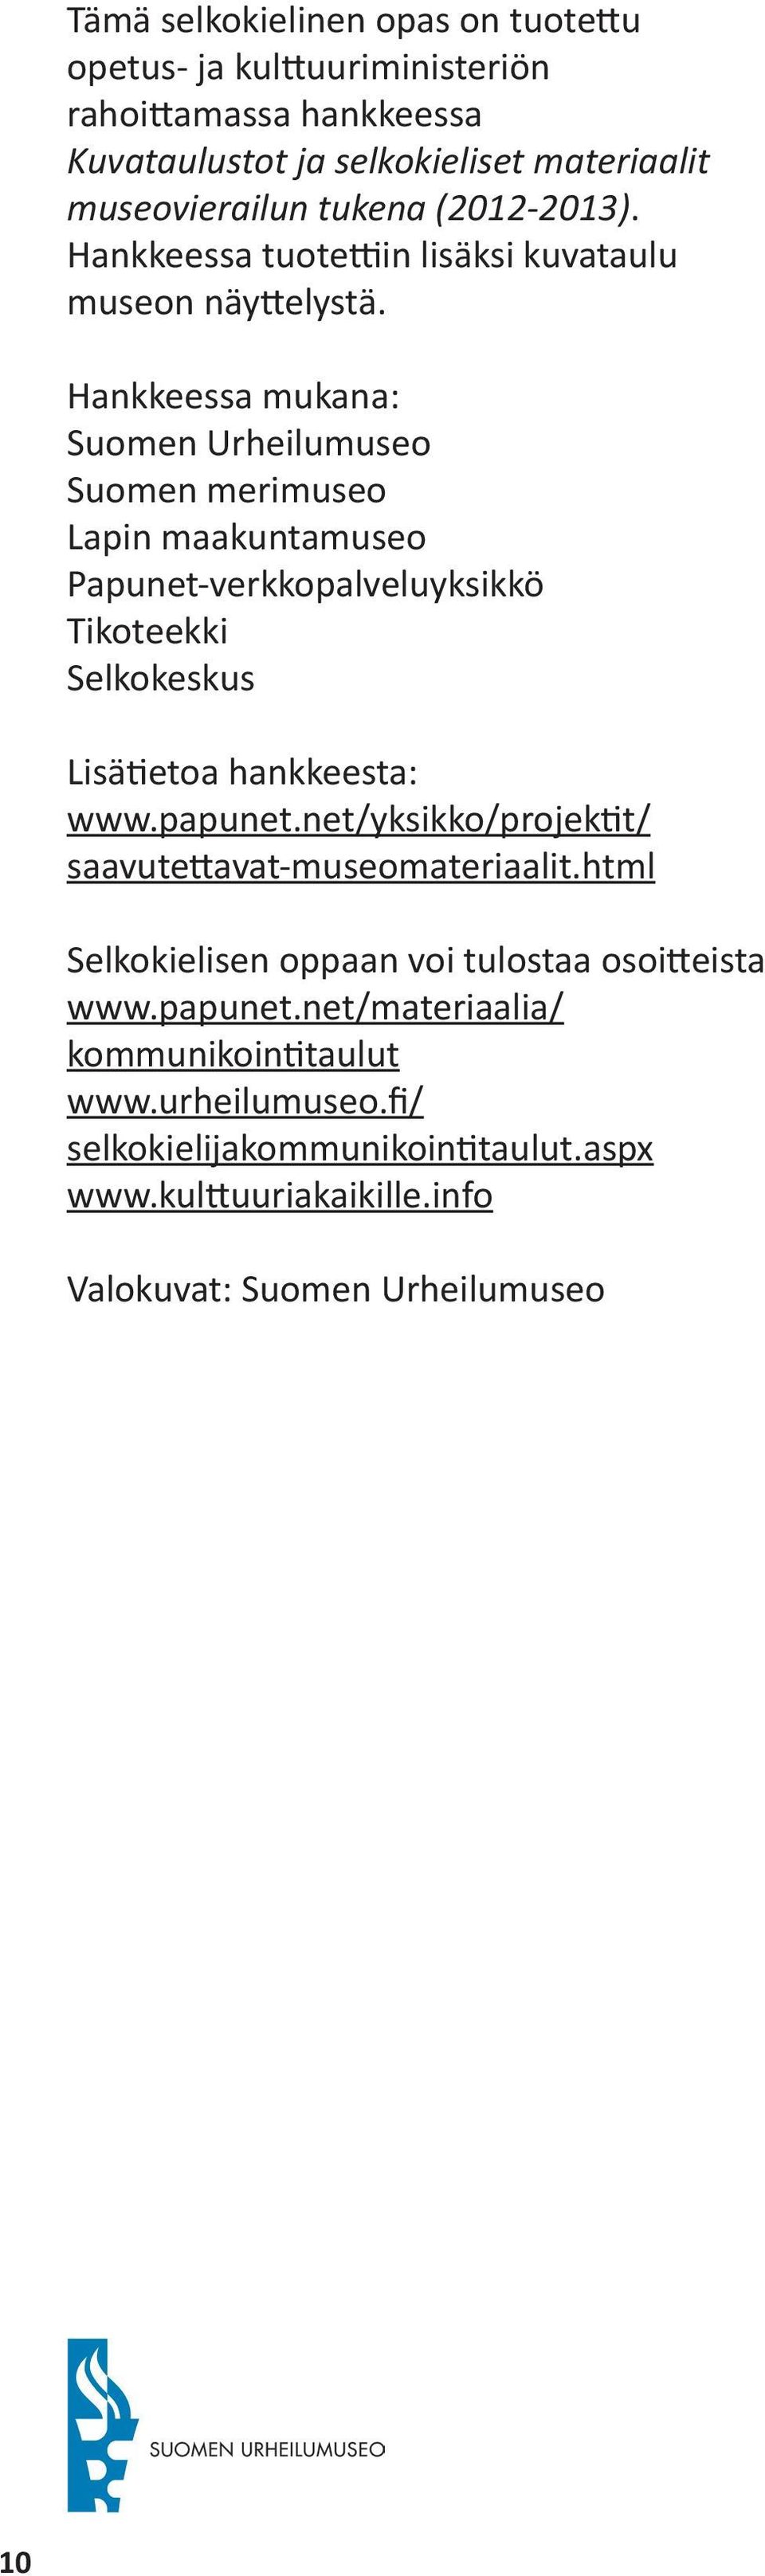 Hankkeessa mukana: Suomen Urheilumuseo Suomen merimuseo Lapin maakuntamuseo Papunet-verkkopalveluyksikkö Tikoteekki Selkokeskus Lisätietoa hankkeesta: www.papunet.